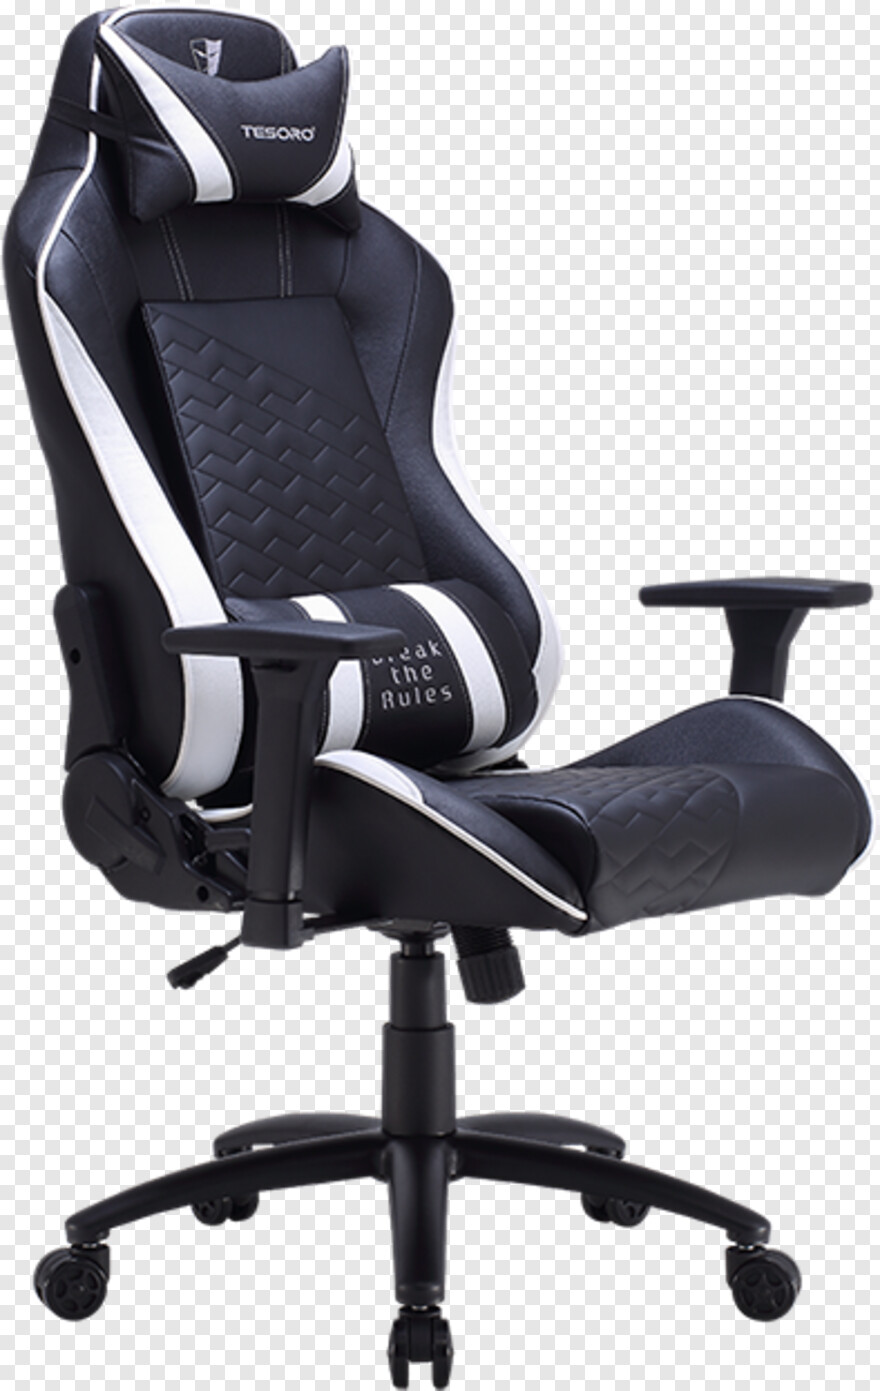 chair # 419851